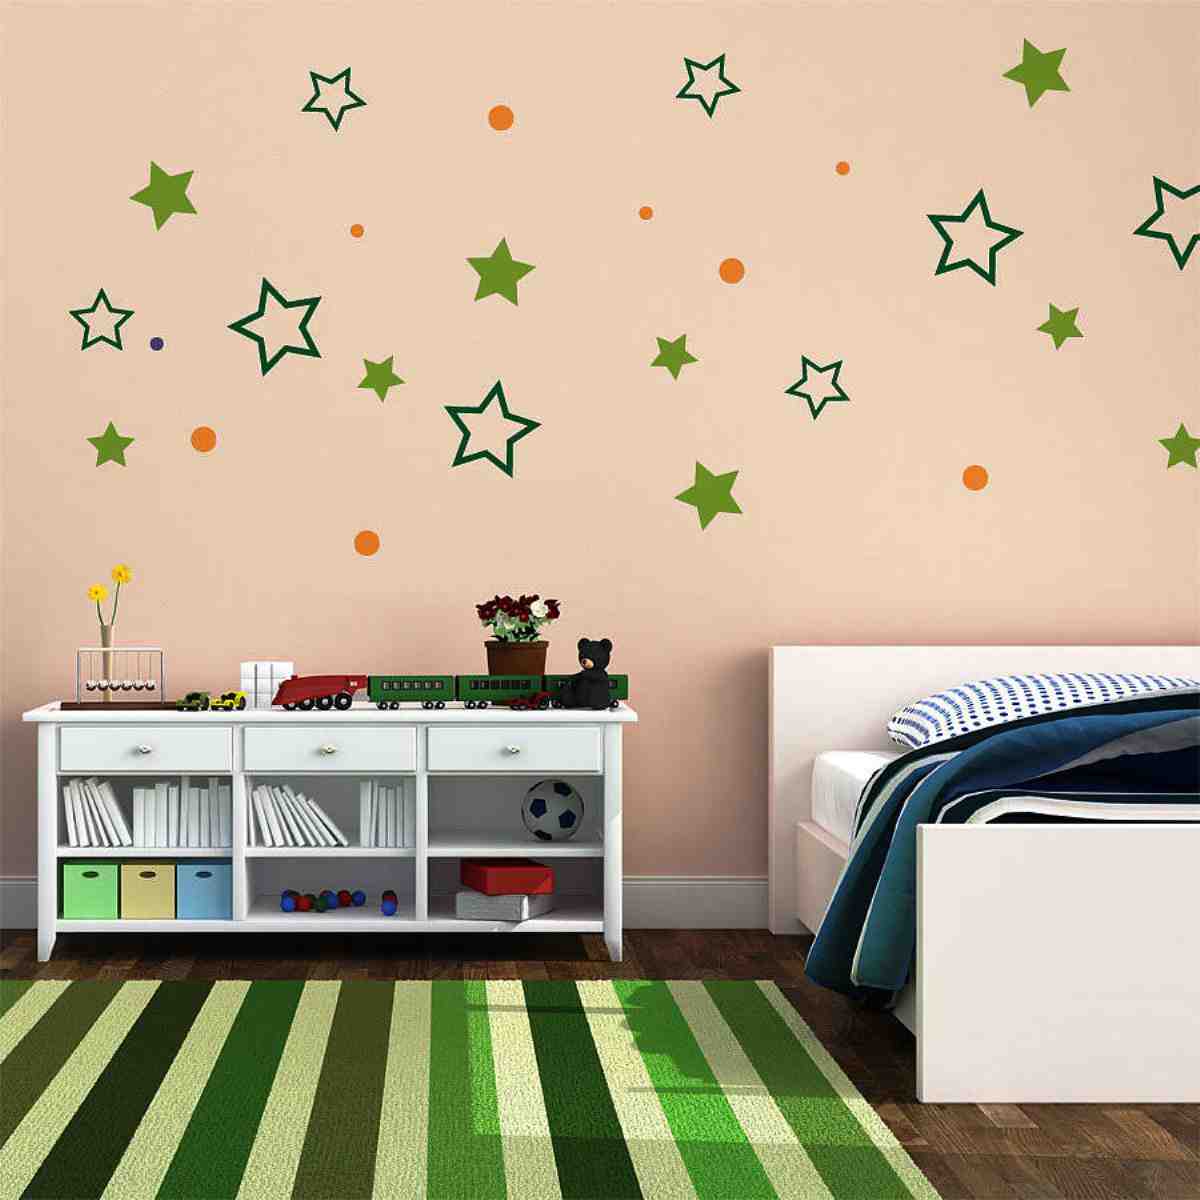 Diy Wall Decor Ideas for Bedroom - Decor IdeasDecor Ideas